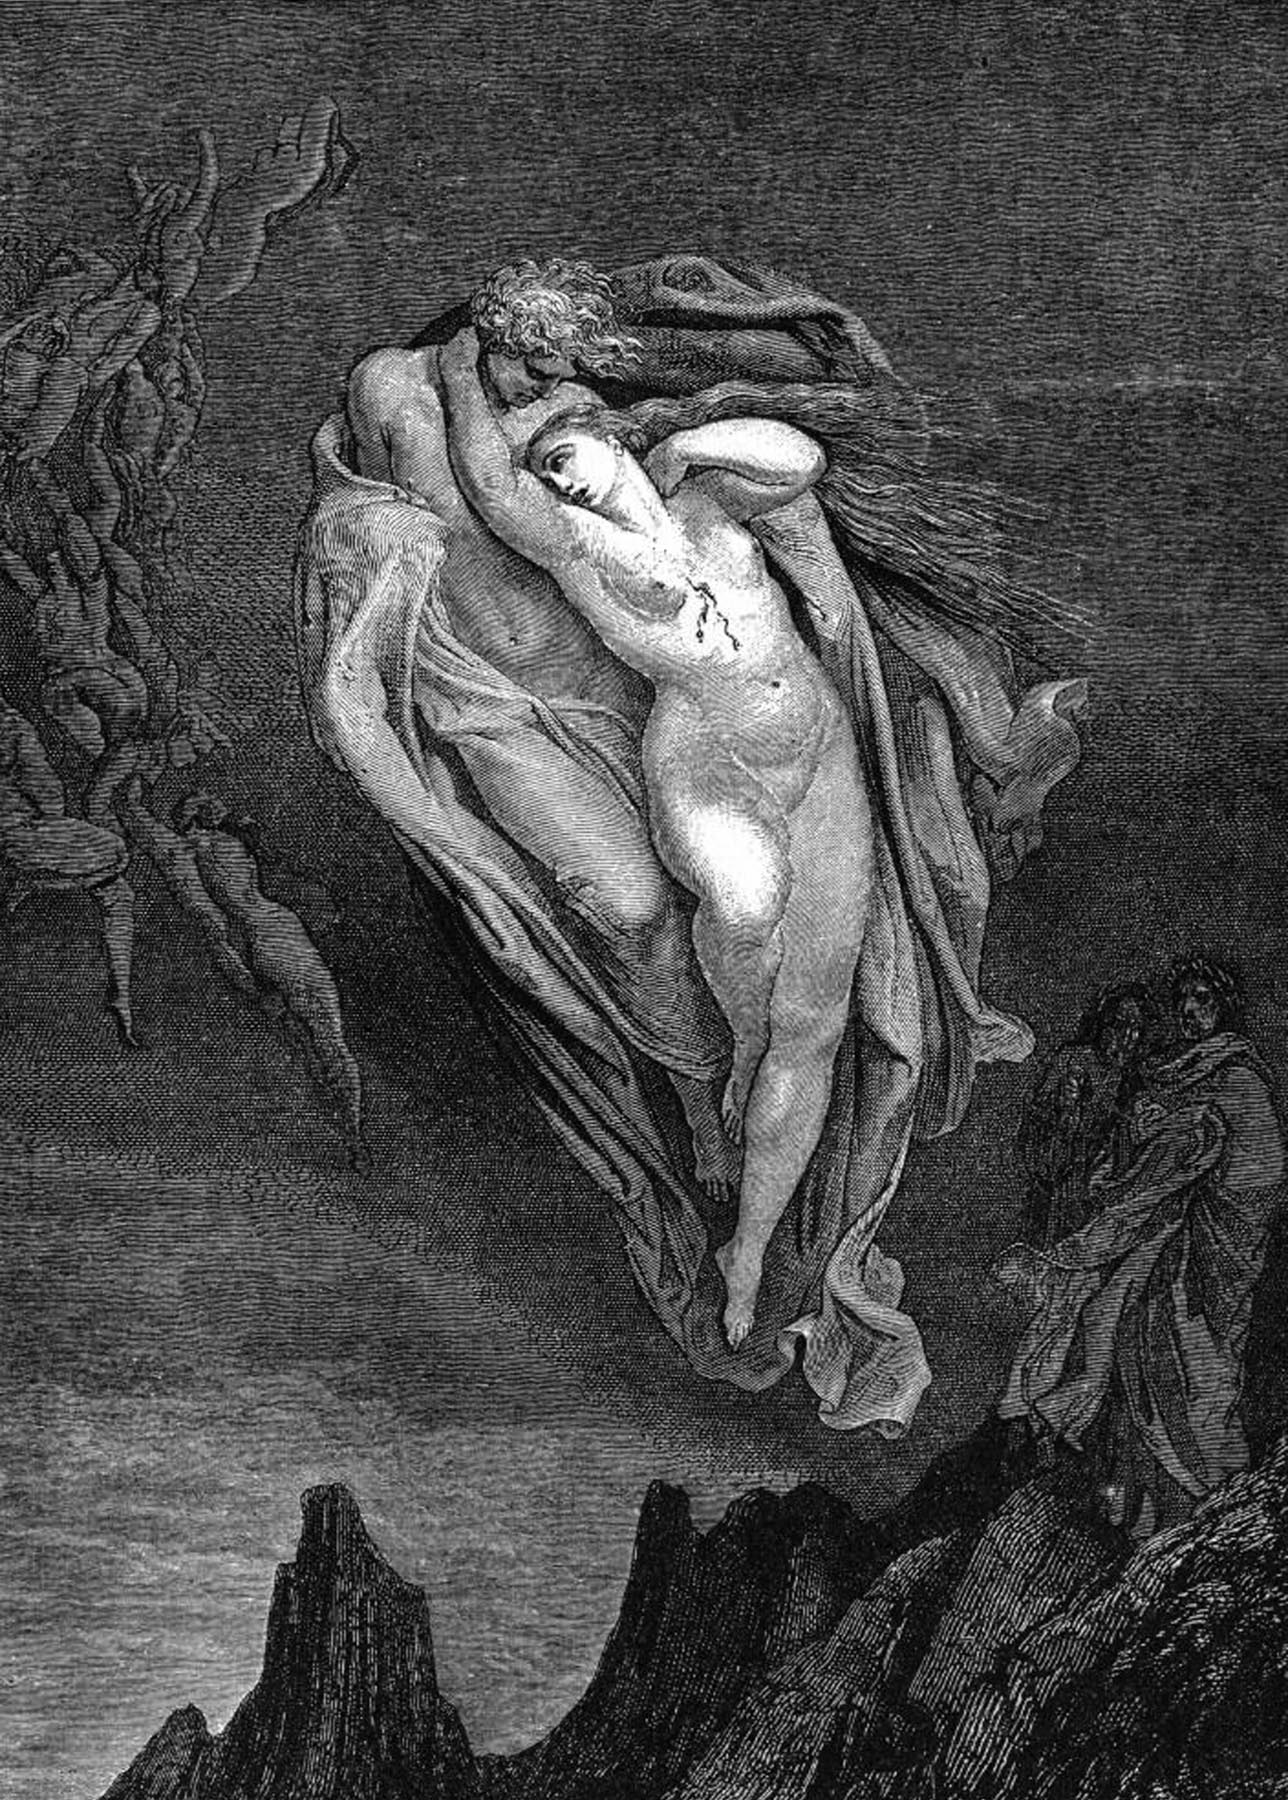 Dante's Inferno Canto 1 (Divine Comedy)